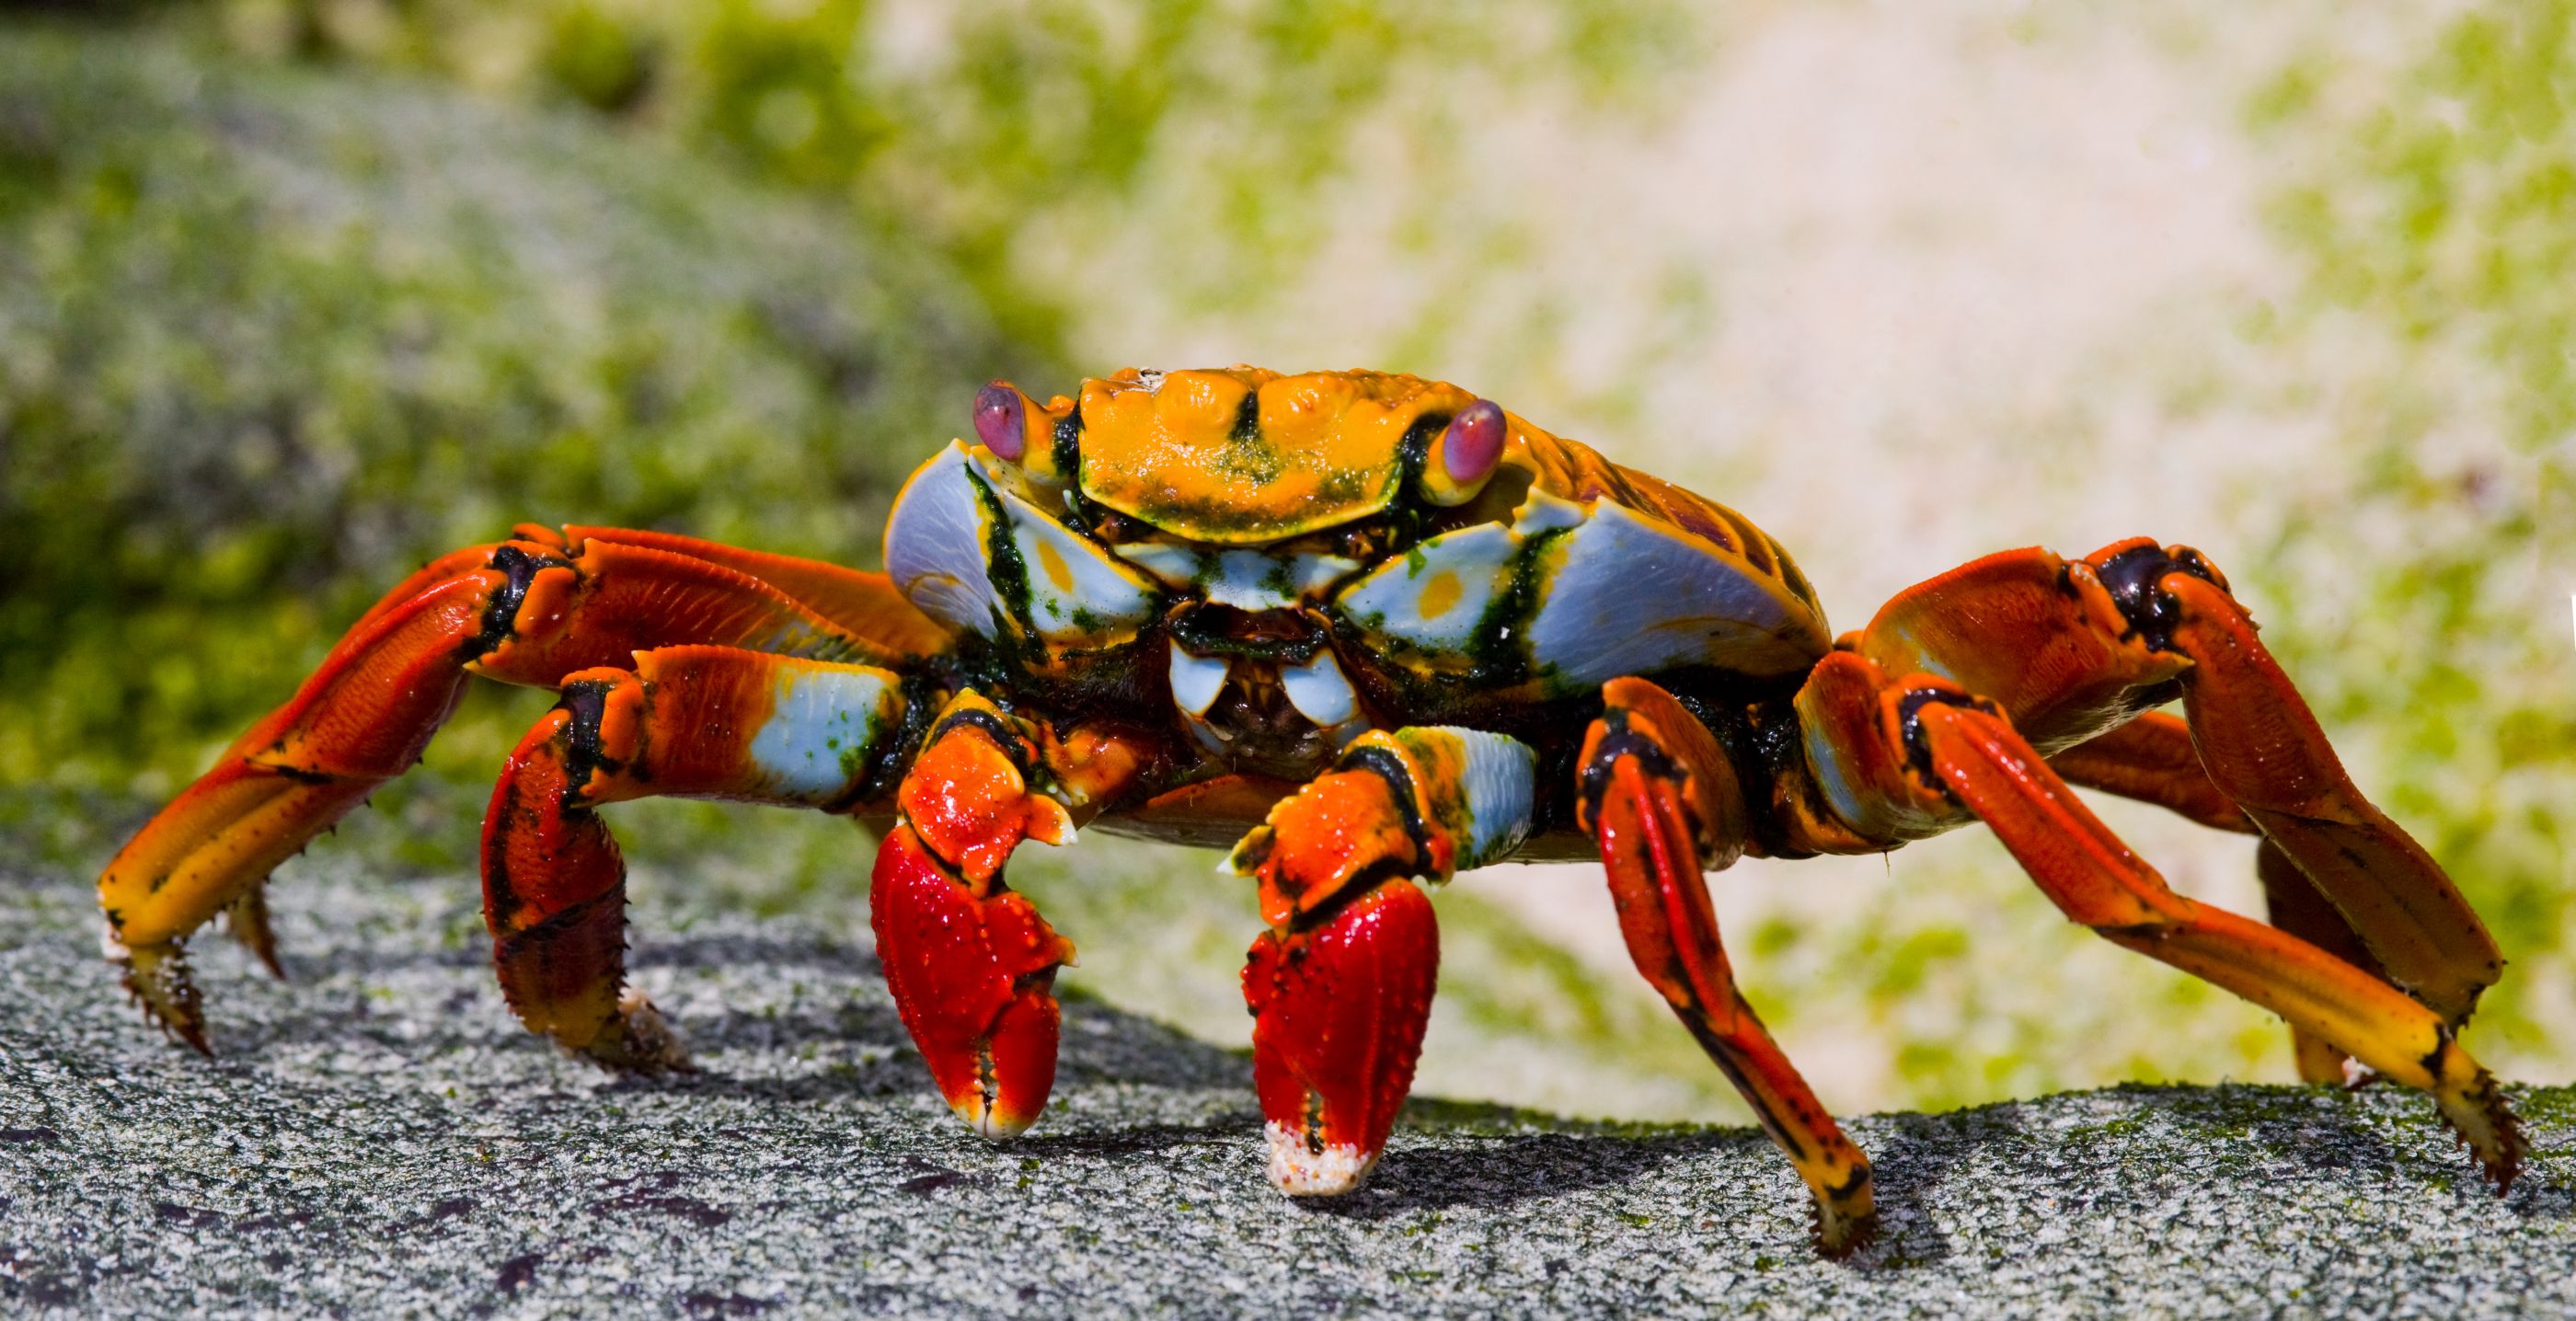 Crab found on the Galapagos Islands, Ecuador